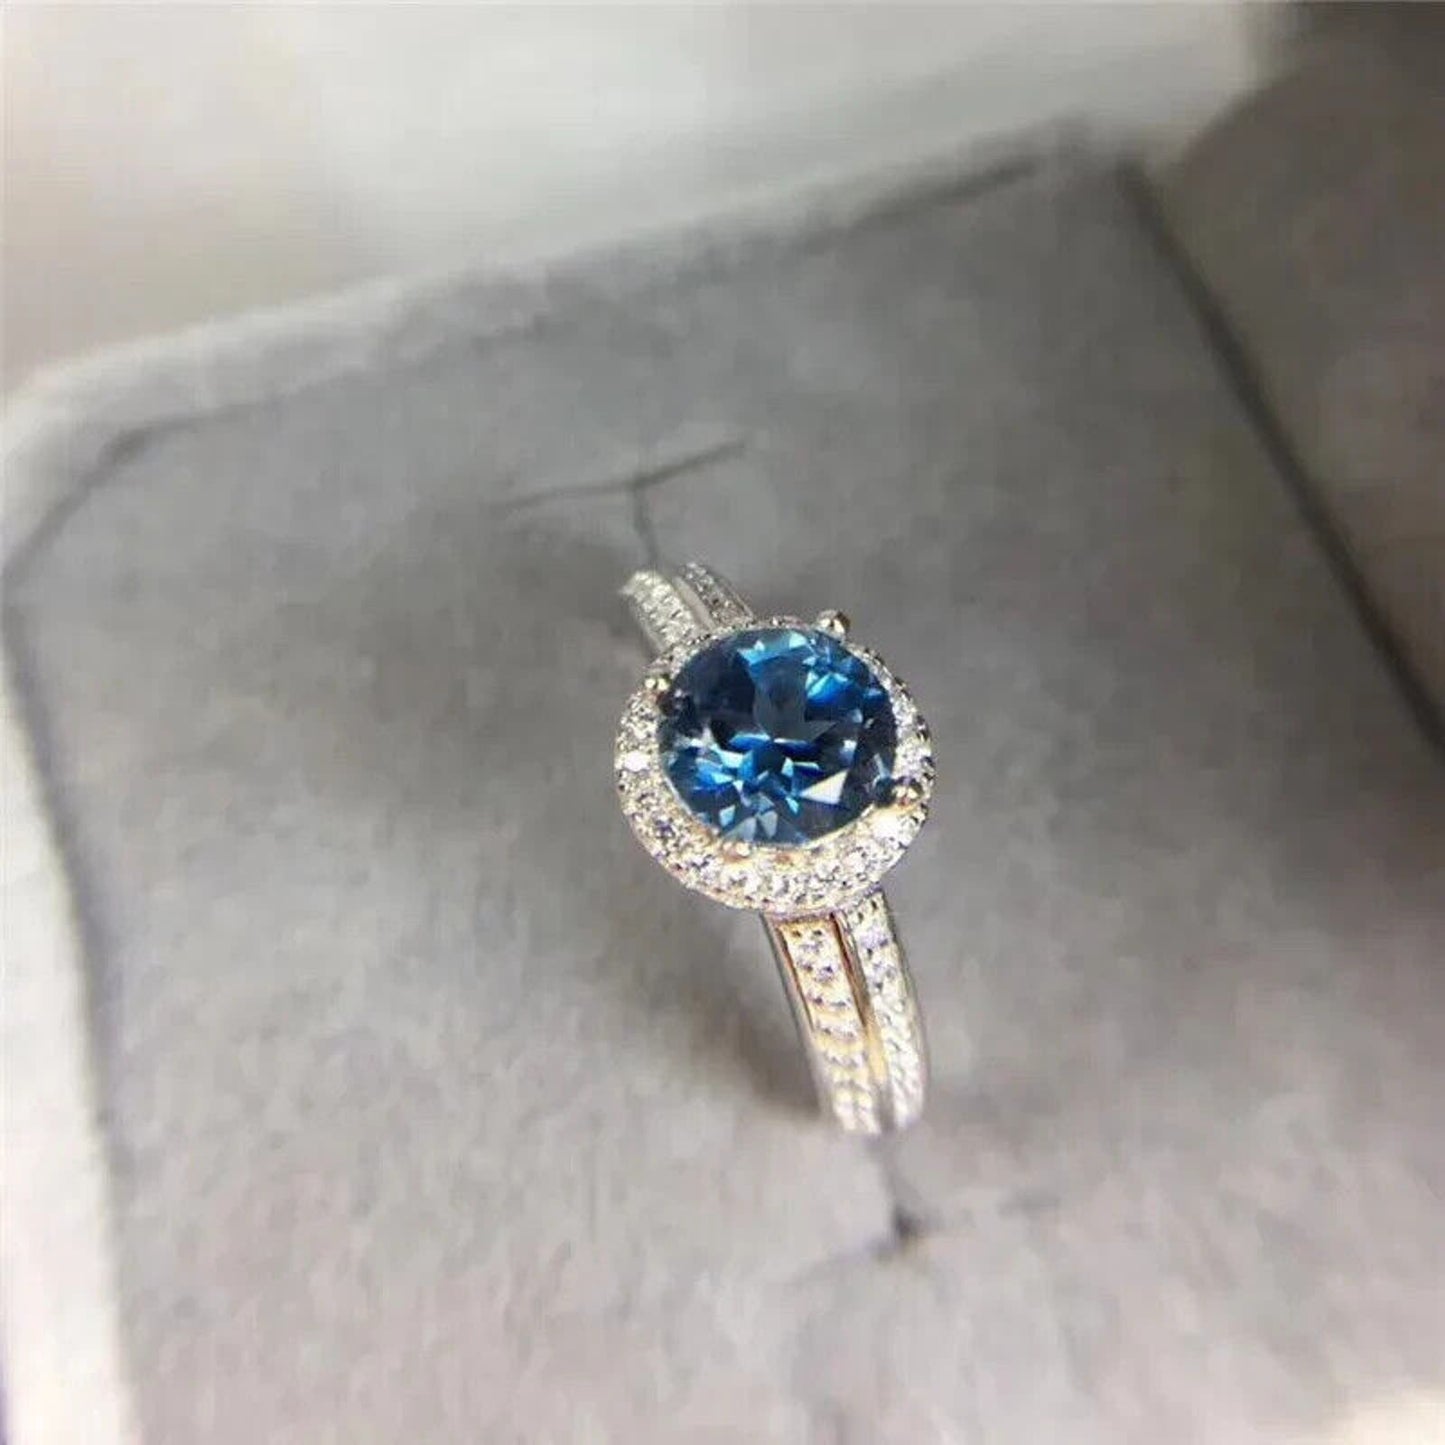 Natural London Blue Topaz Gemstone Ring 6mm, Women's London Blue Topaz Rings